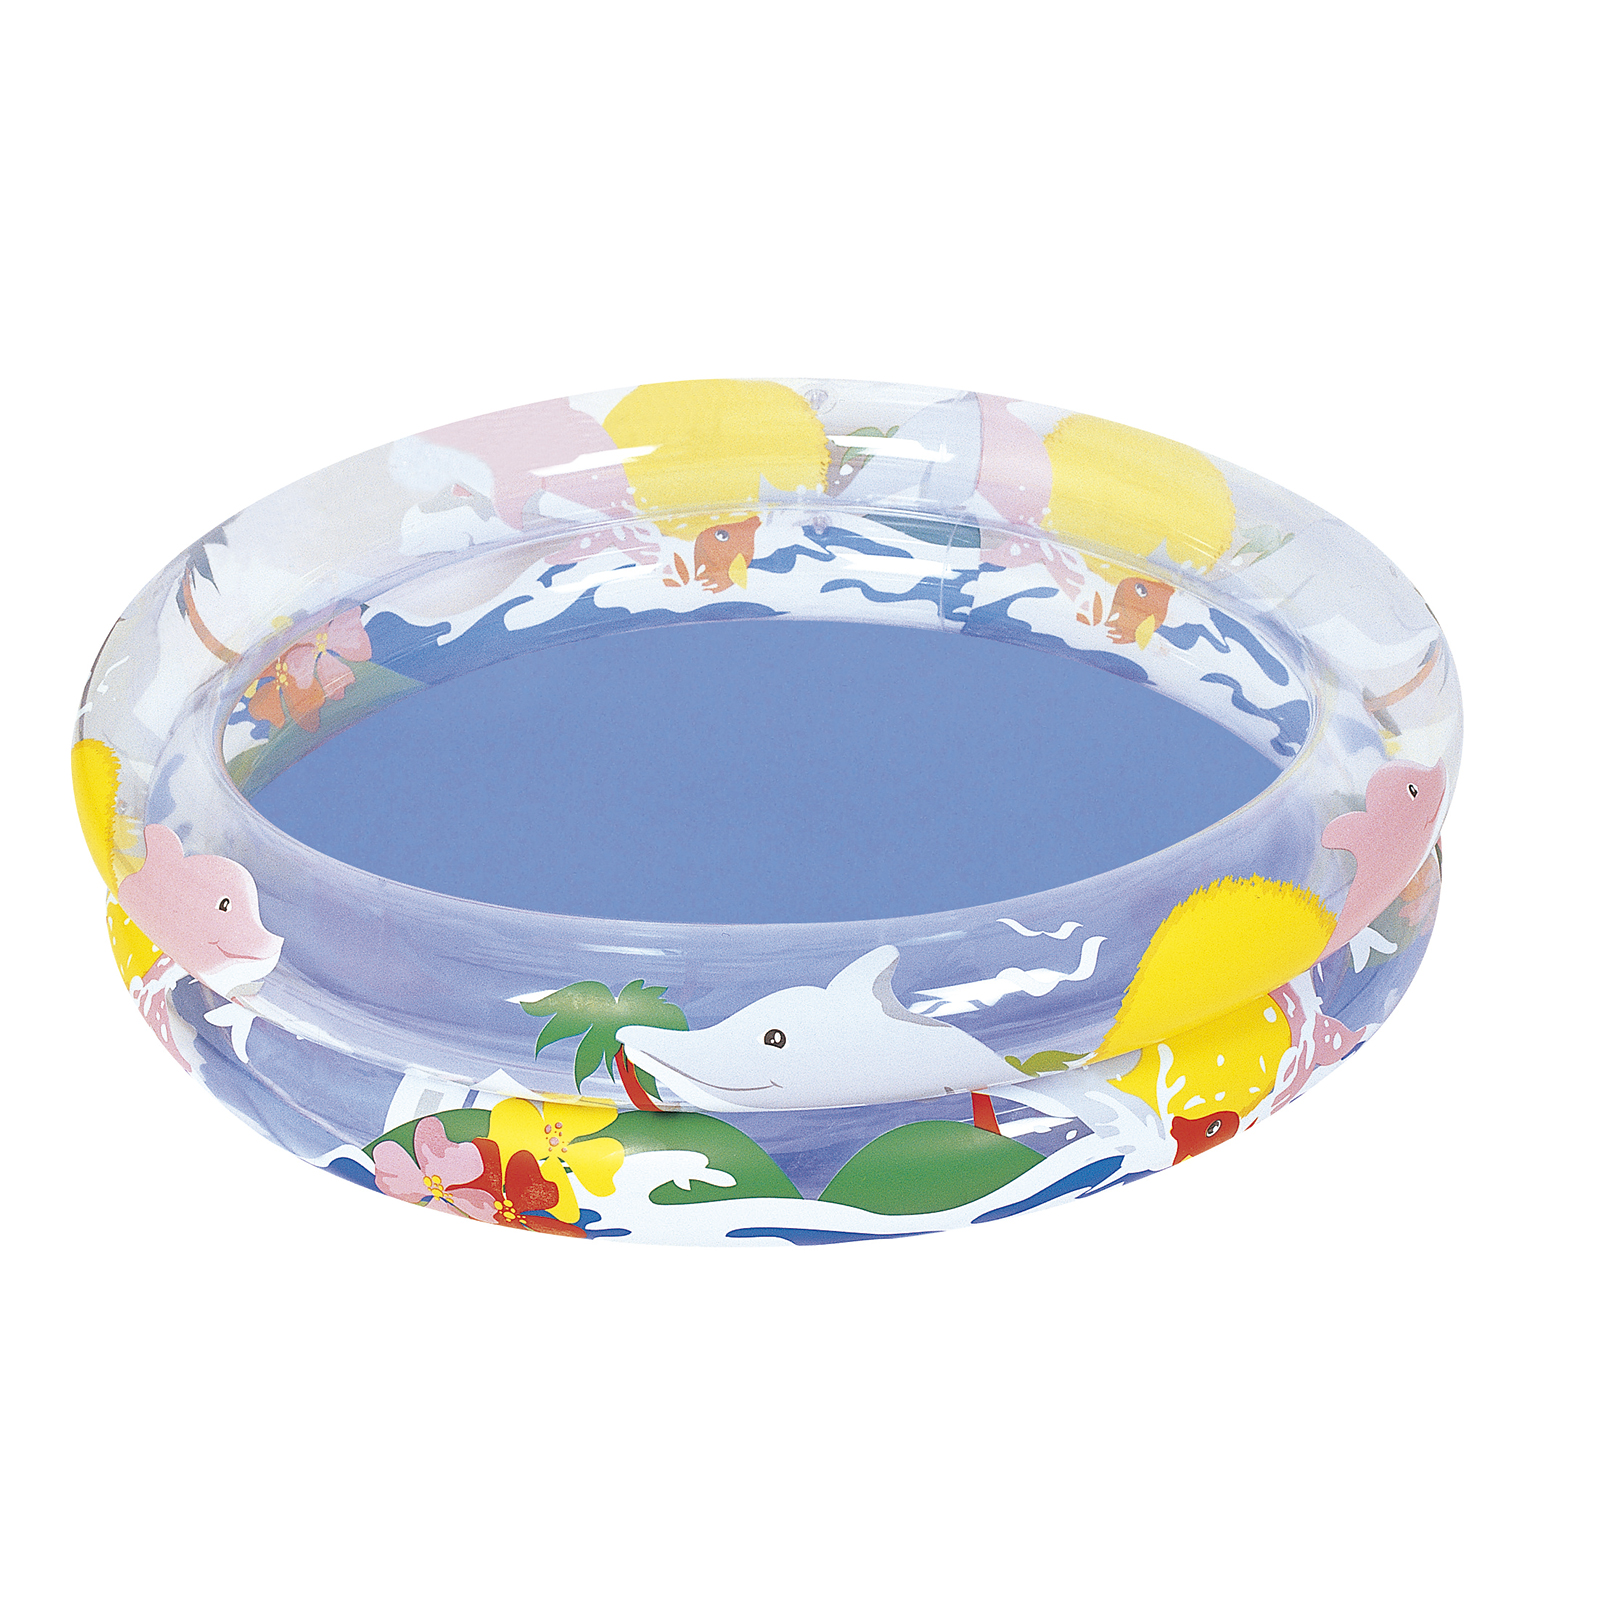 Piscina Hinchable Autoportante Infantil Bestway Sea Life 91x91 Cm Diseño Mundo Animal Marino Rápida - multicolor - 